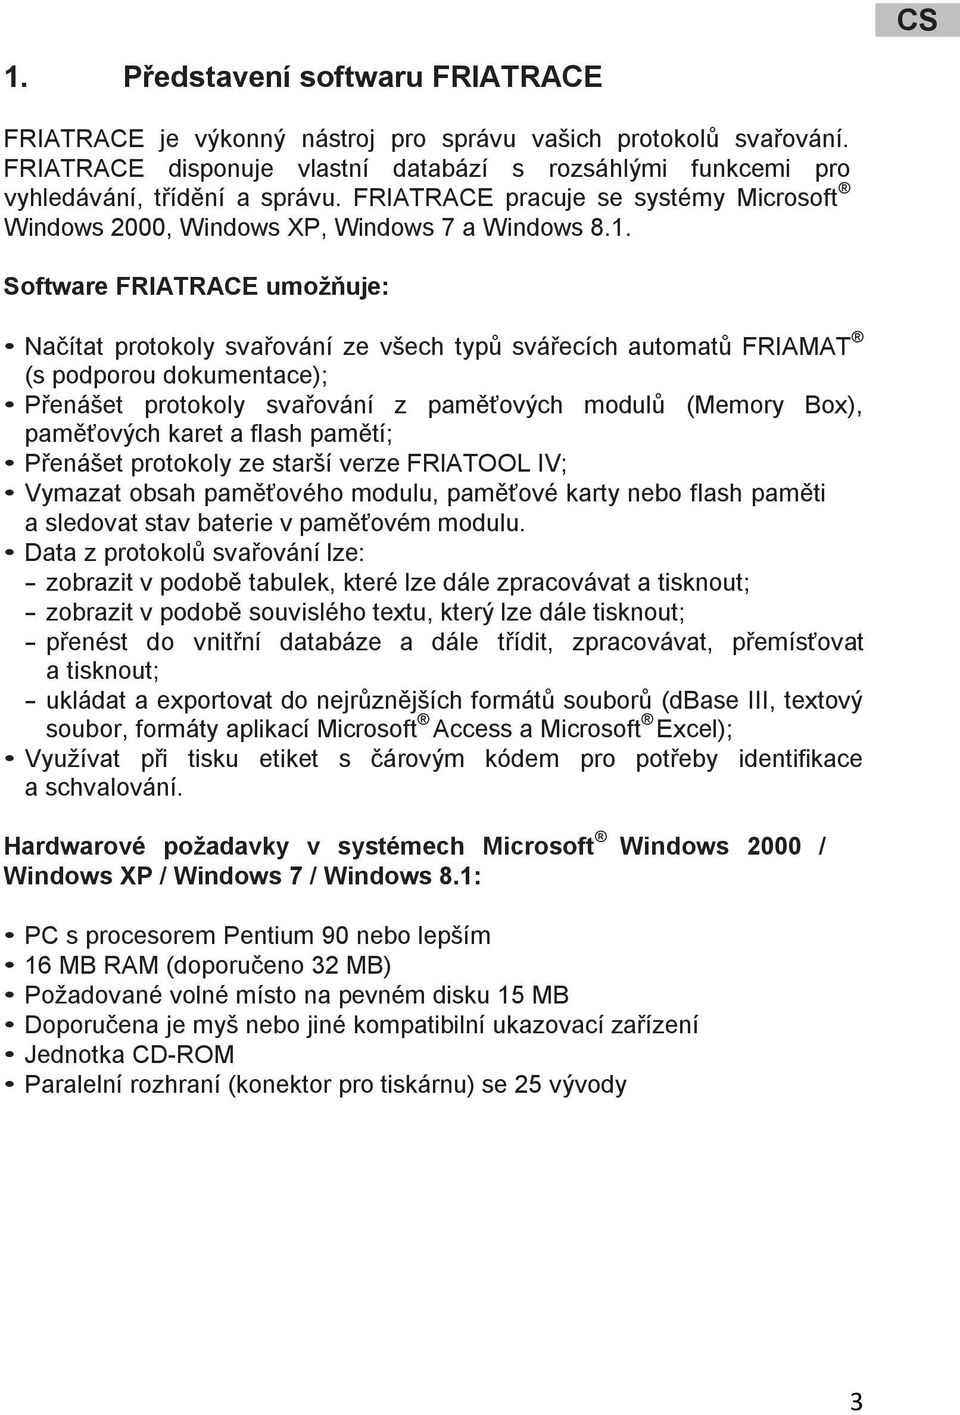 Software FRIATRACE umožňuje: Načítat protokoly svařování ze všech typů svářecích automatů FRIAMAT (s podporou dokumentace); Přenášet protokoly svařování z paměťových modulů (Memory Box), paměťových